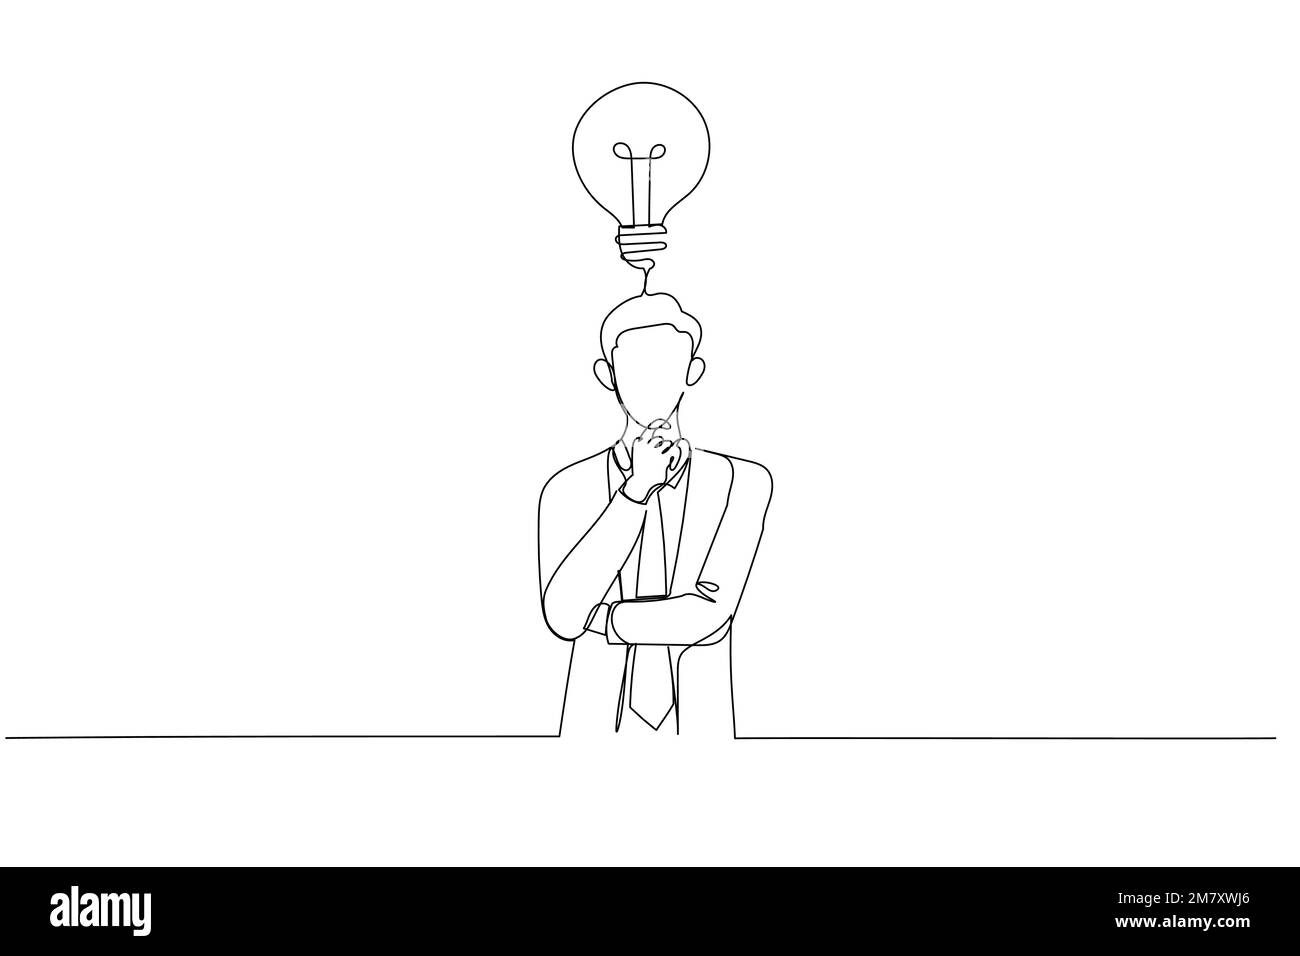 Cartoon mit Taille hoch Porträt Geschäftsmann, der einen Plan macht Hand am Kinn halten und aufmerksam aufschauen. Ein kontinuierlicher Strichbildstil Stock Vektor